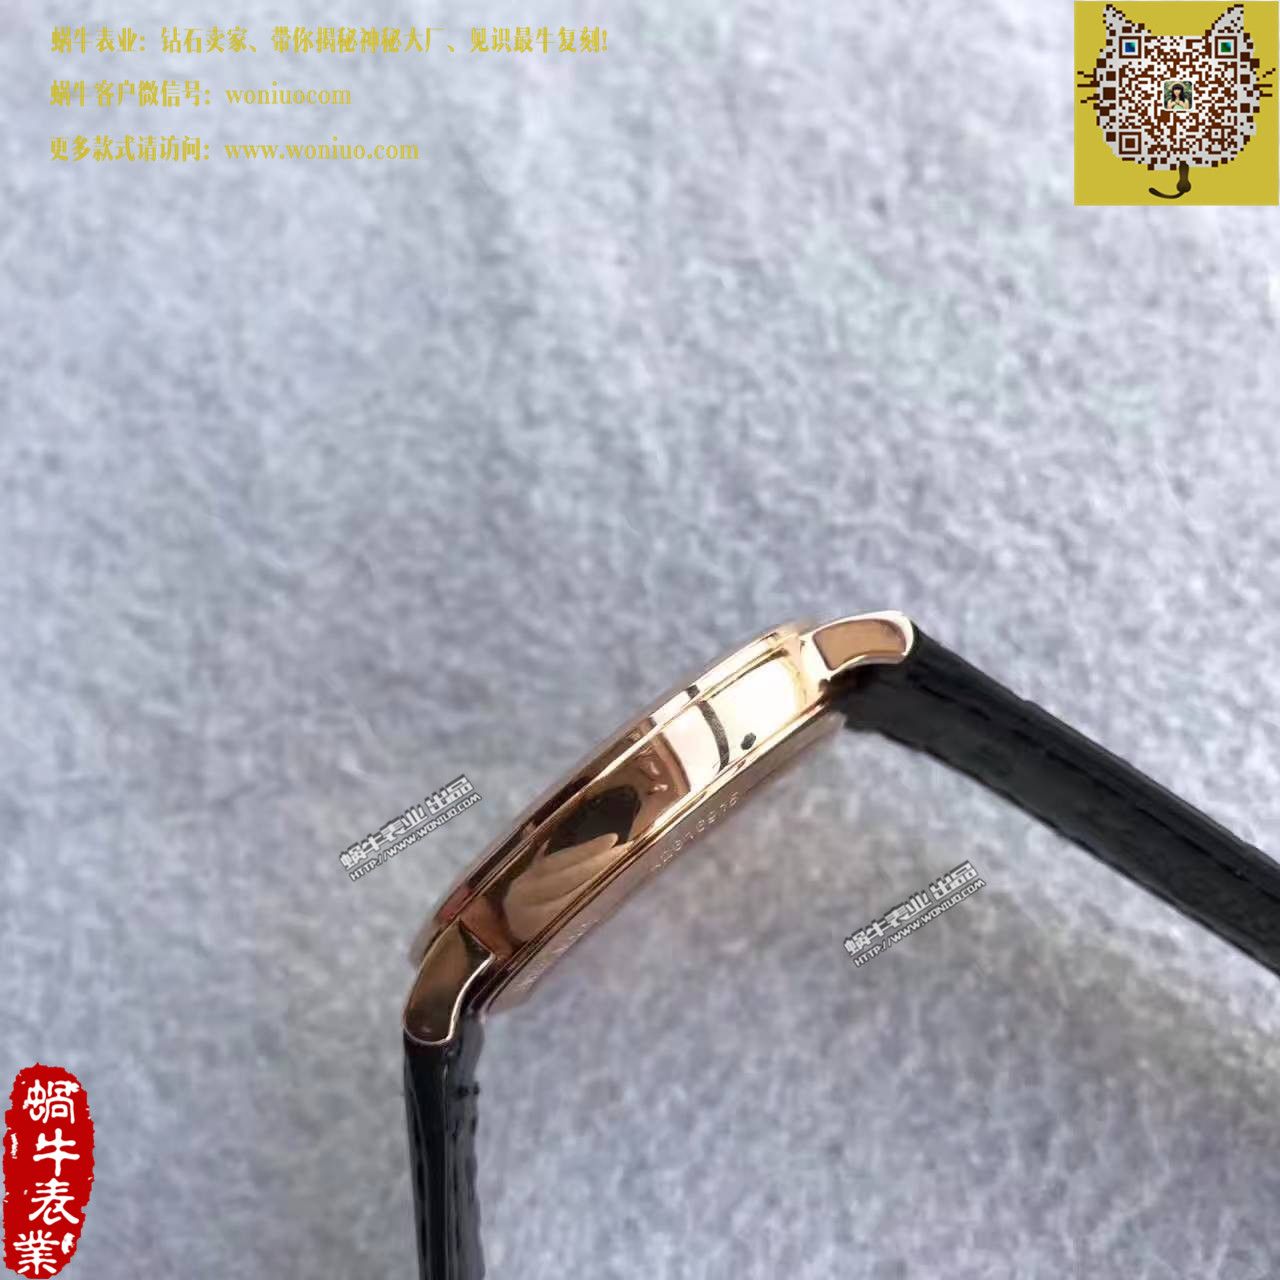 【台湾厂一比一超A高仿手表】浪琴《博雅》优雅系列L4.787.8.11.4腕表 